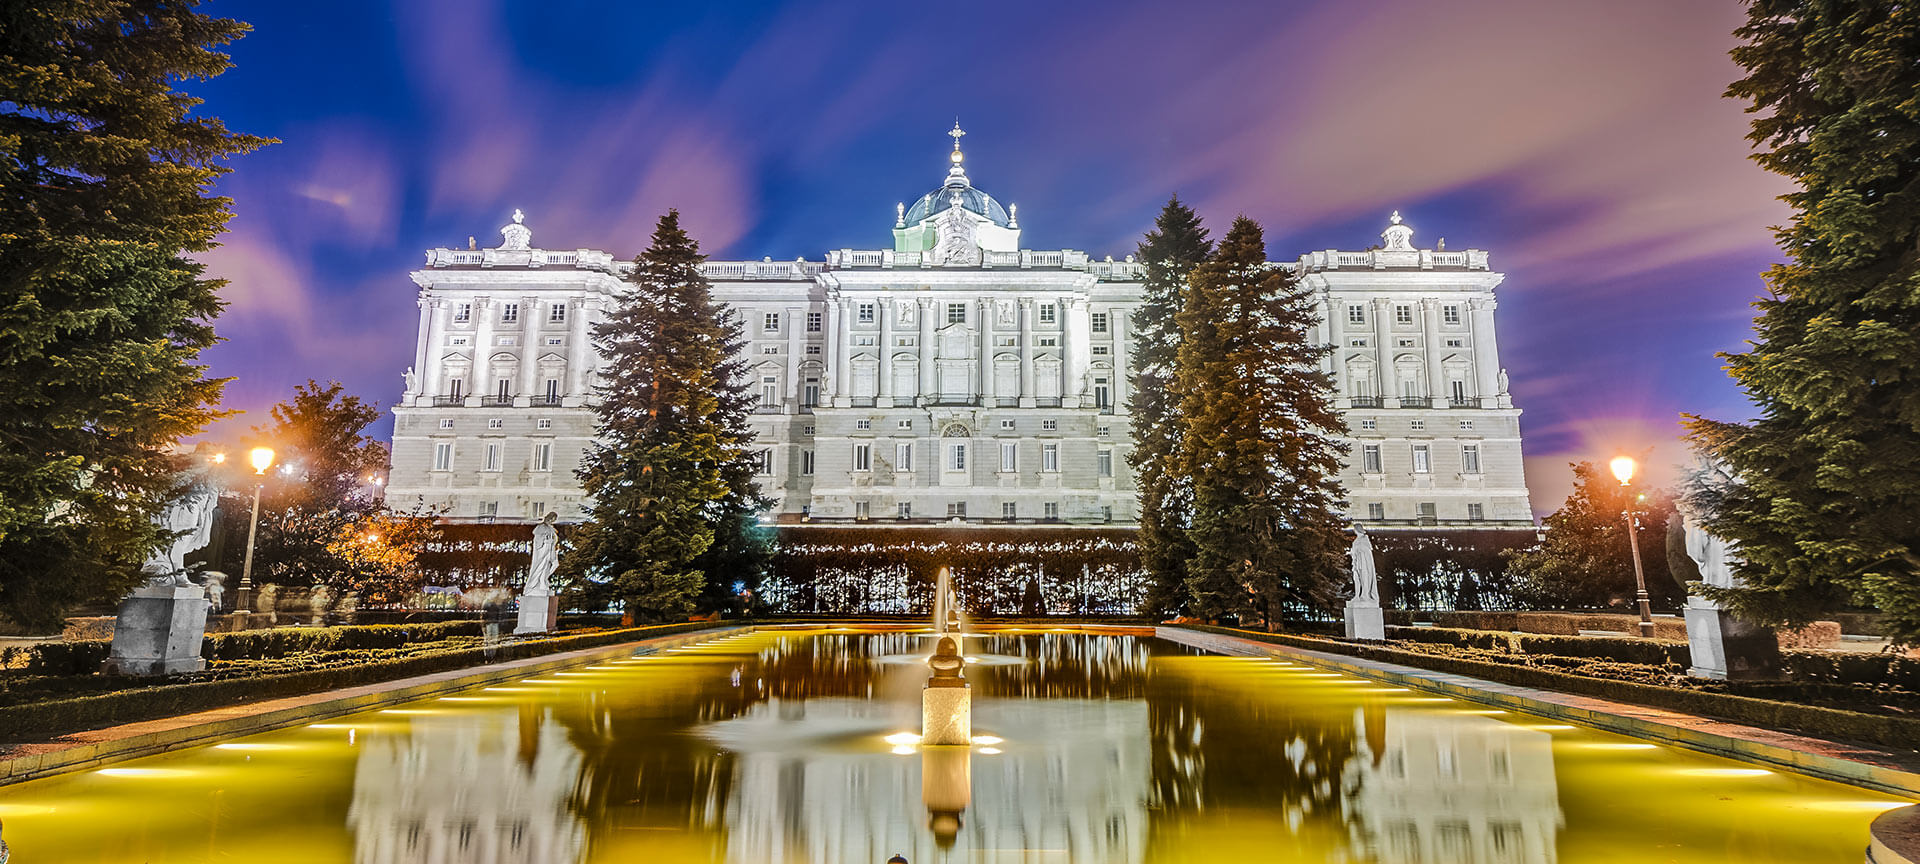 ¿Cómo llegar a Palacio Real del Pardo en Madrid en Autobús o Tren?